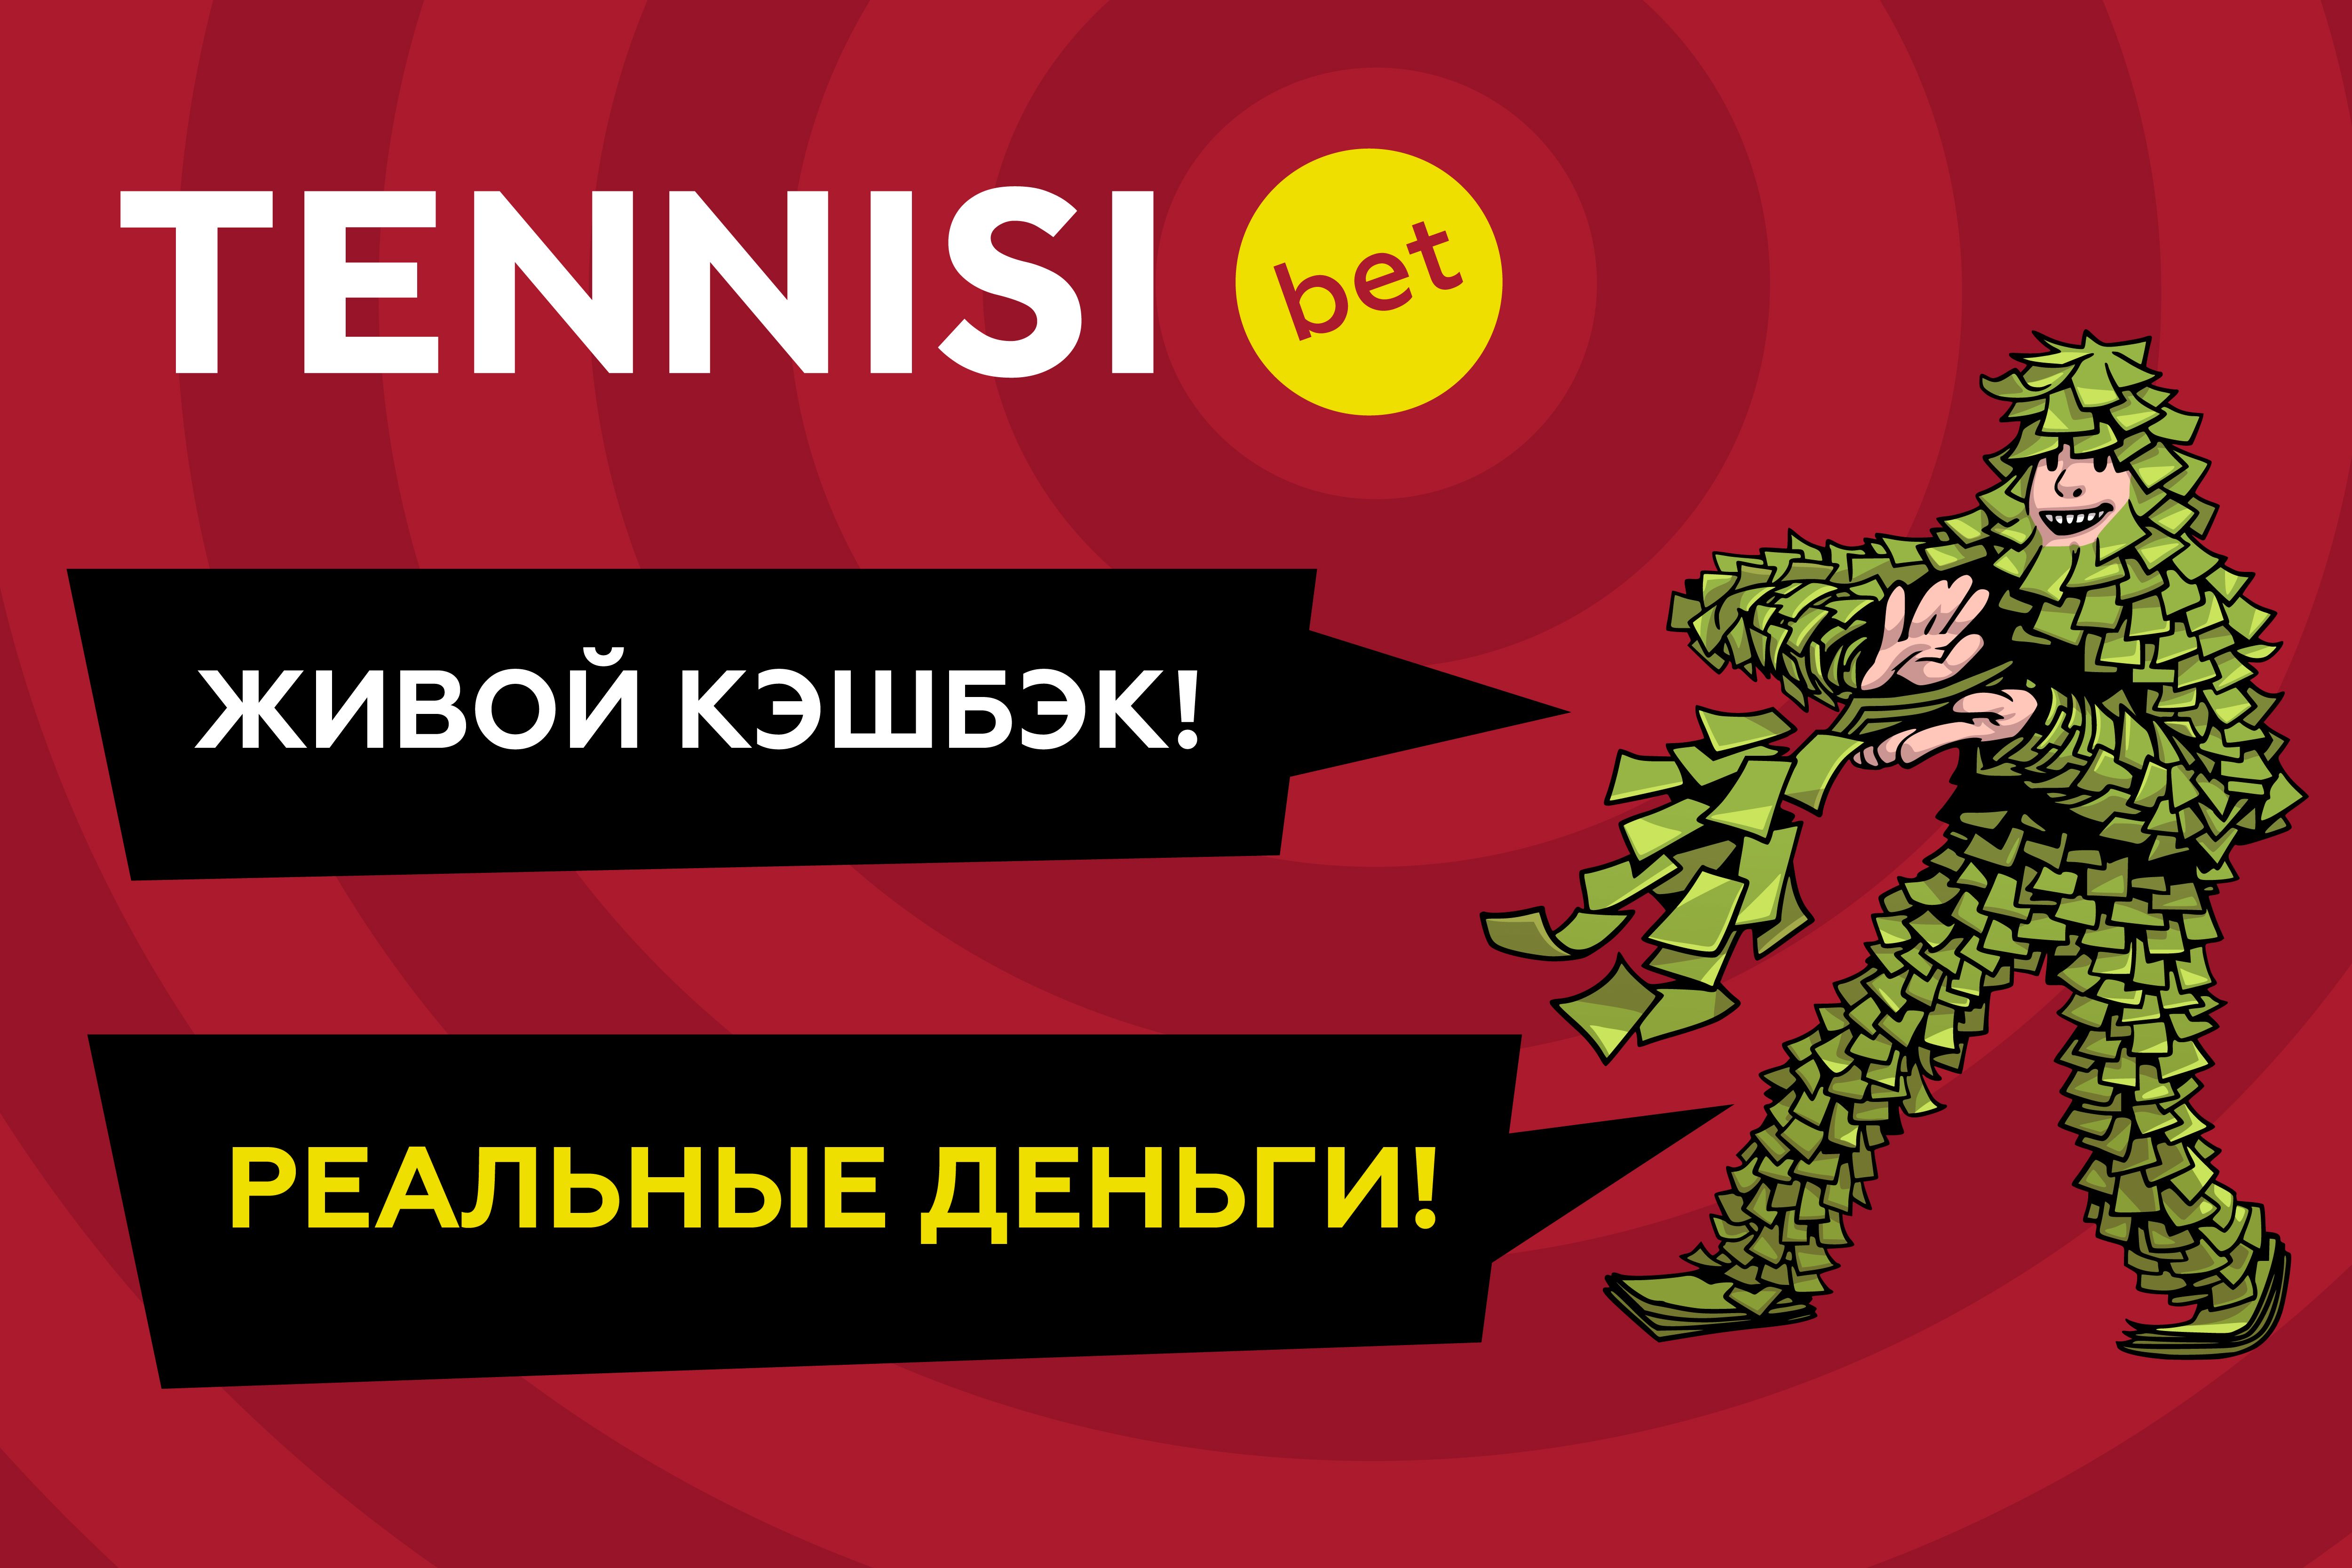 TENNISI bet предлагает новую акцию для кэшбэк-героя за экспрессы 19 и 20 марта